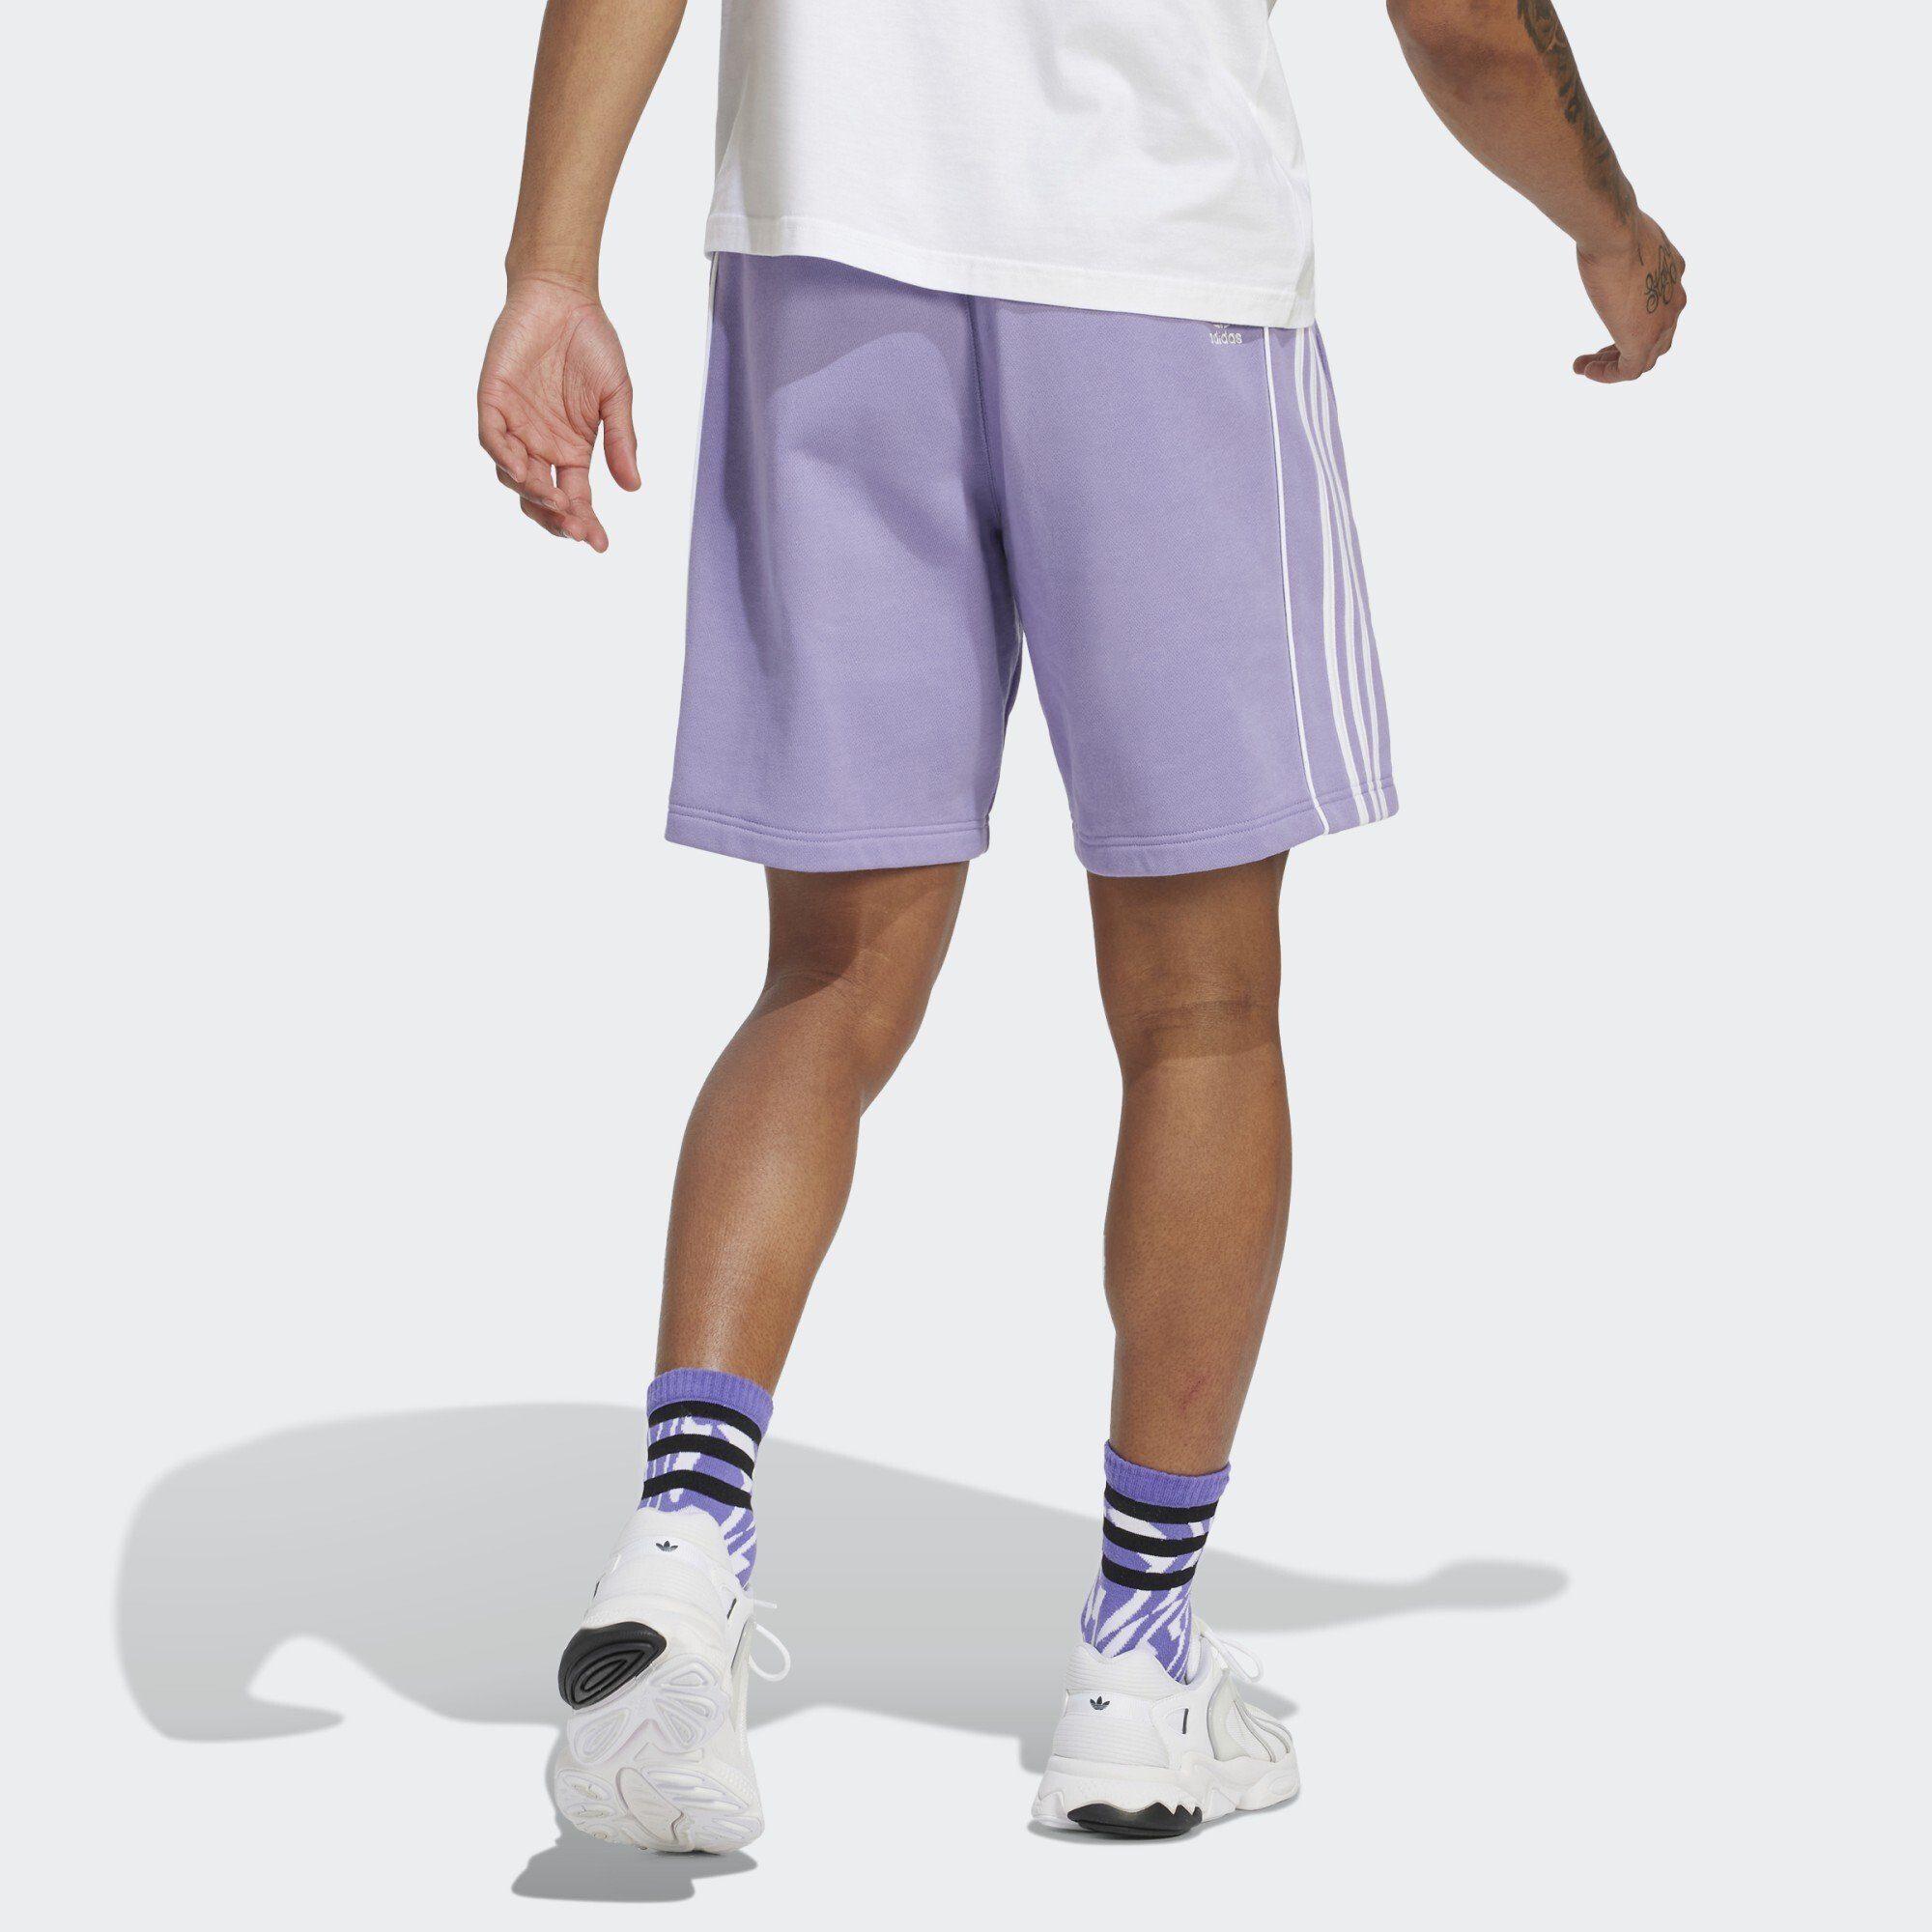 adidas Originals Shorts ADIDAS REKIVE Magic SHORTS Lilac